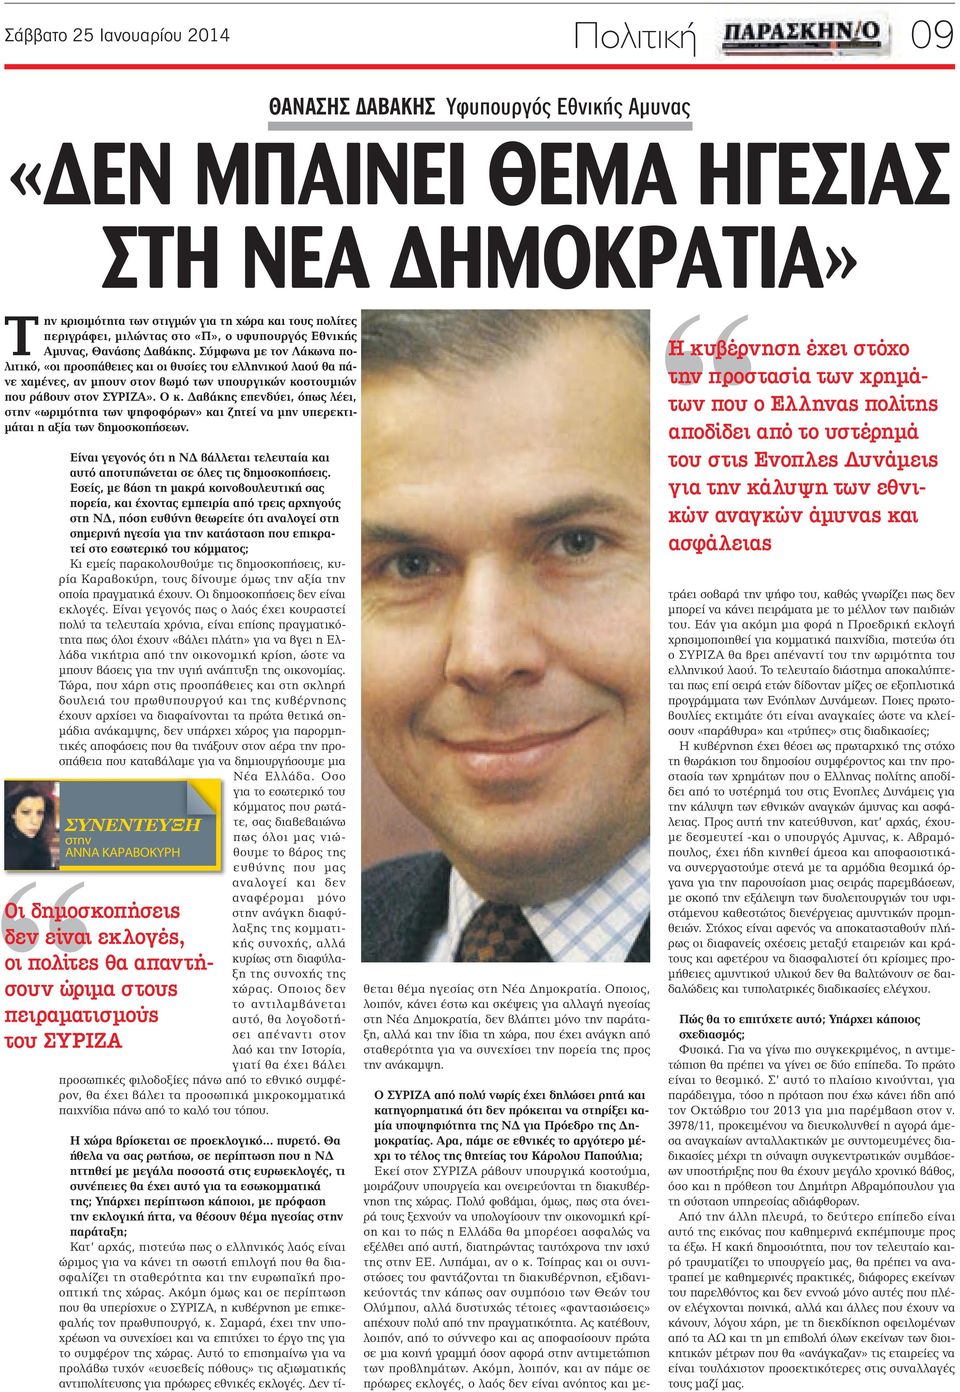 Σύμφωνα με τον Λάκωνα πολιτικό, «οι προσπάθειες και οι θυσίες του ελληνικού λαού θα πάνε χαμένες, αν μπουν στον βωμό των υπουργικών κοστουμιών που ράβουν στον ΣΥΡΙΖΑ». Ο κ.